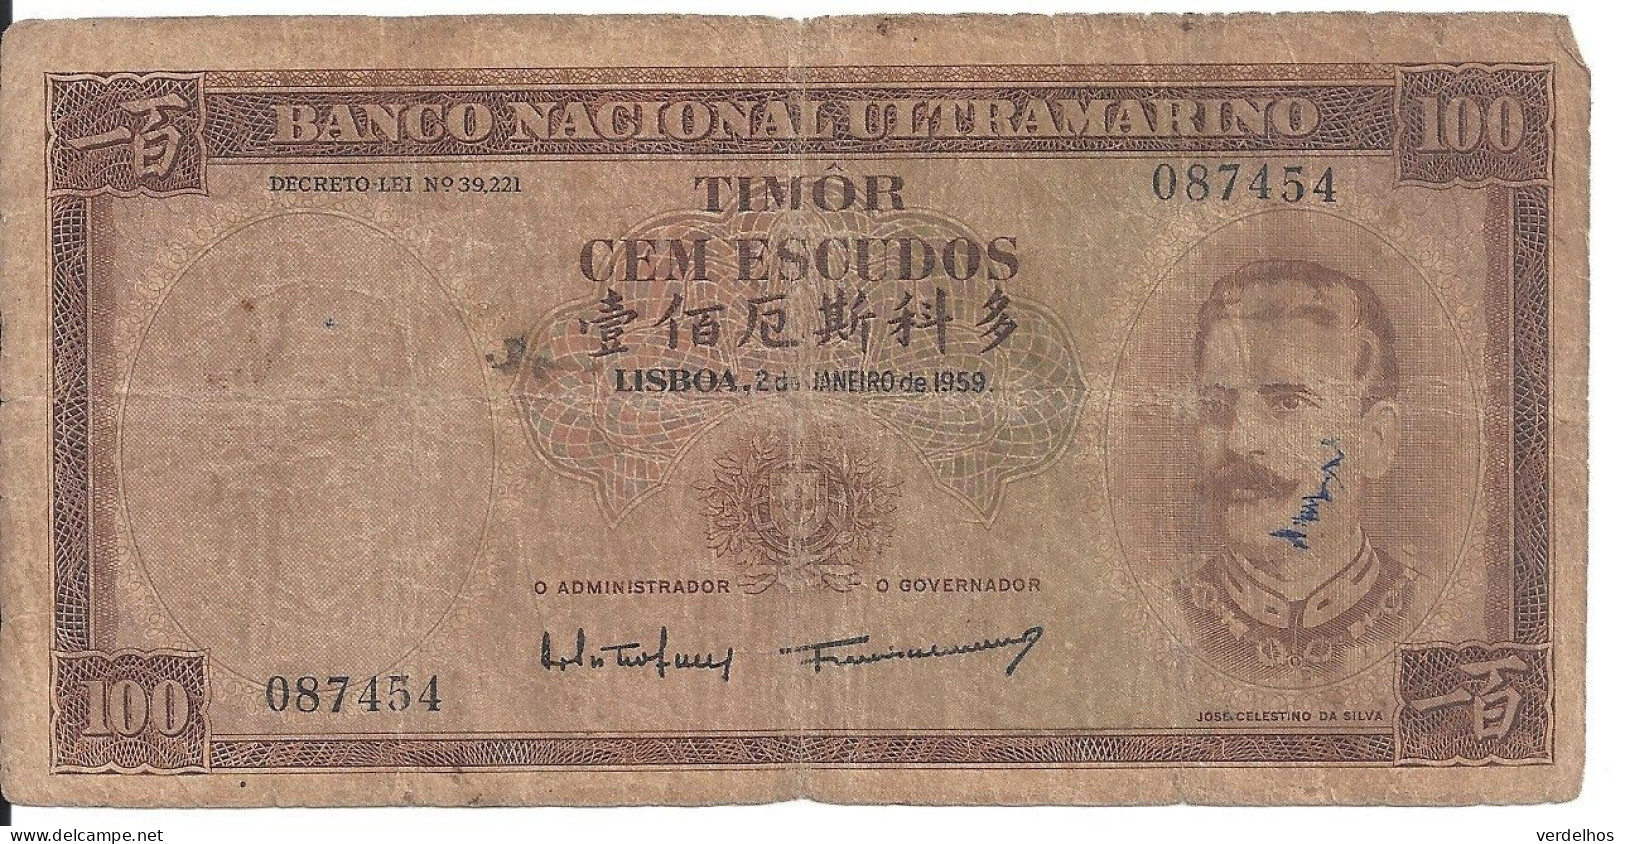 Timor 100 ESCUDOS 1959 VG+ P 24 - Hongkong